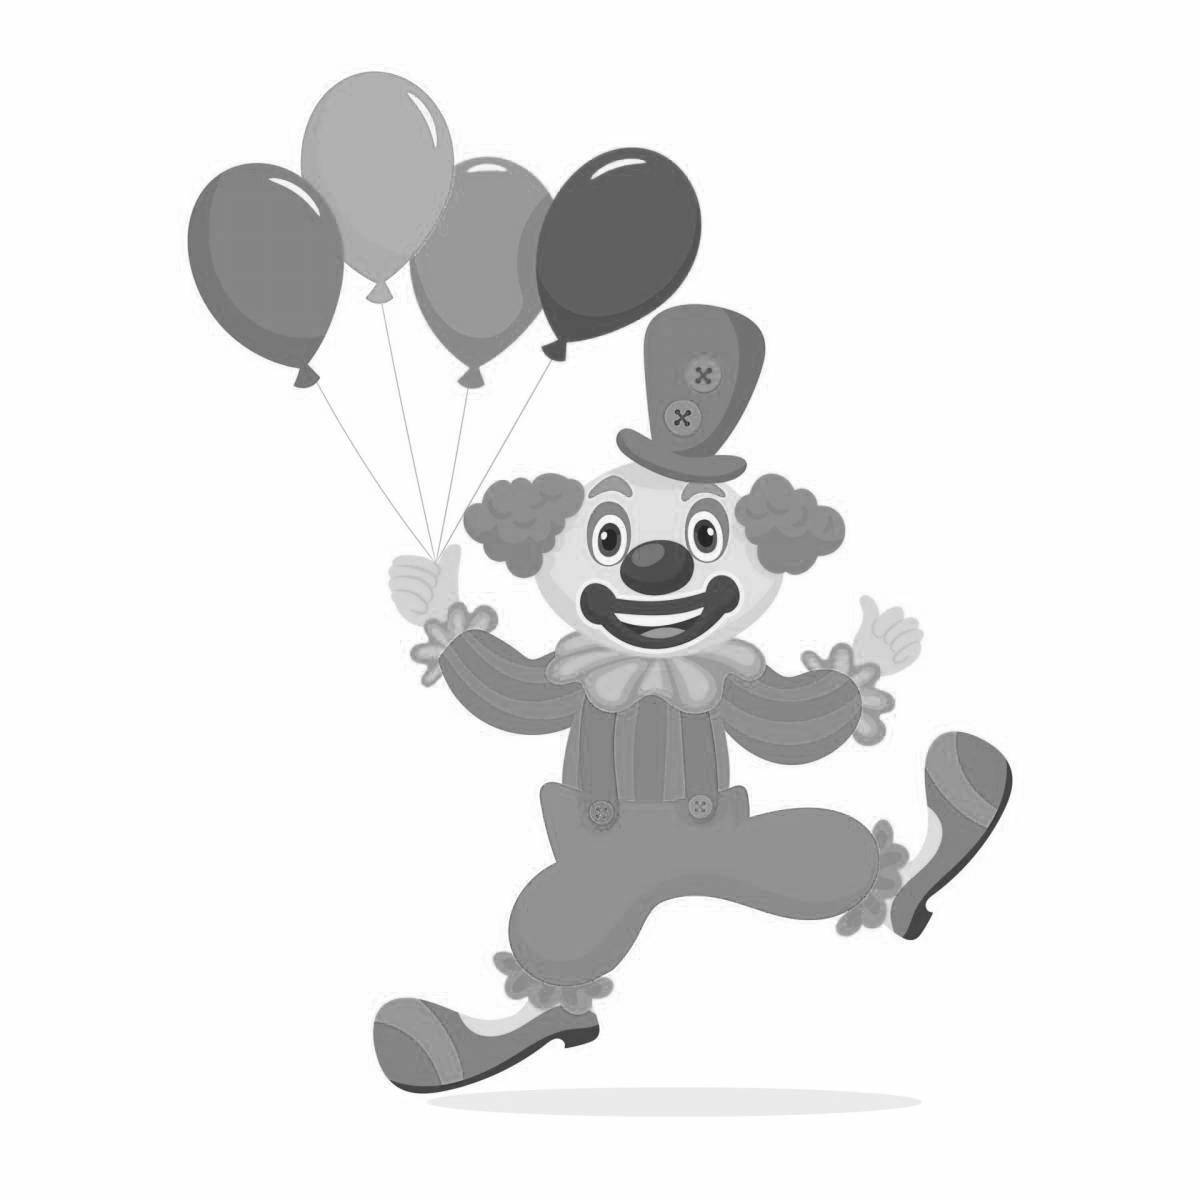 Чиппер-клоун с воздушными шарами